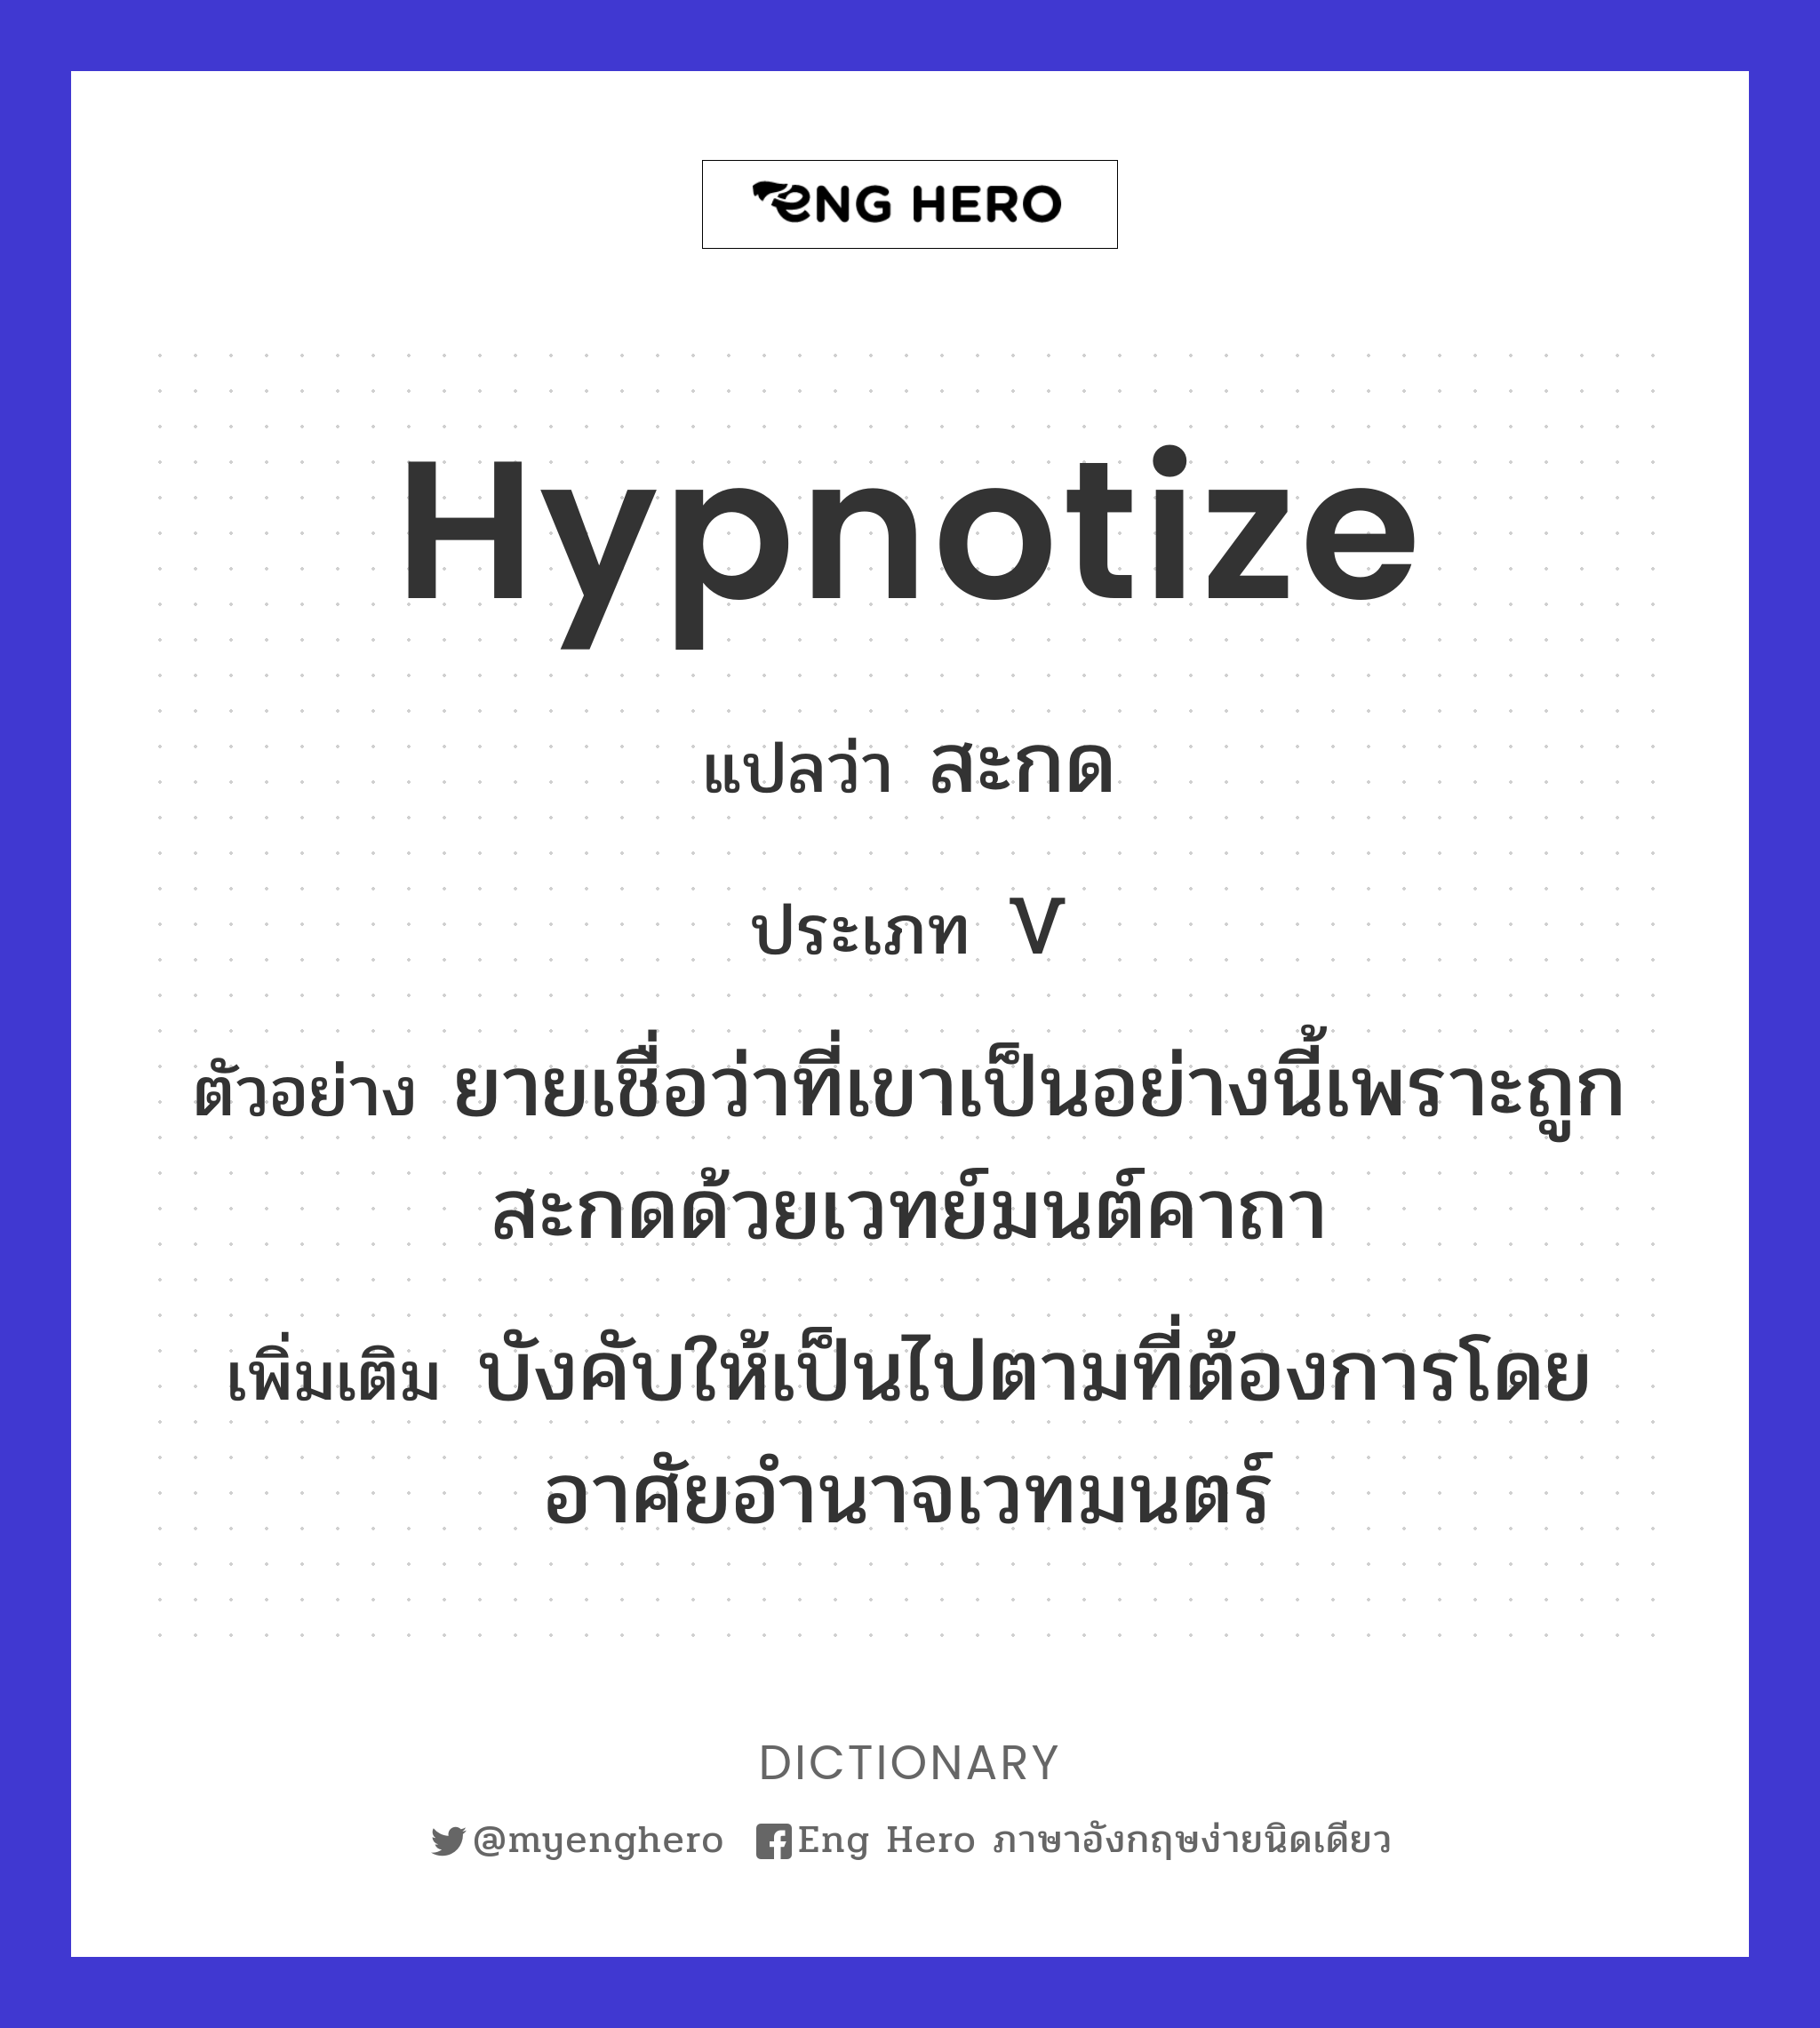 hypnotize